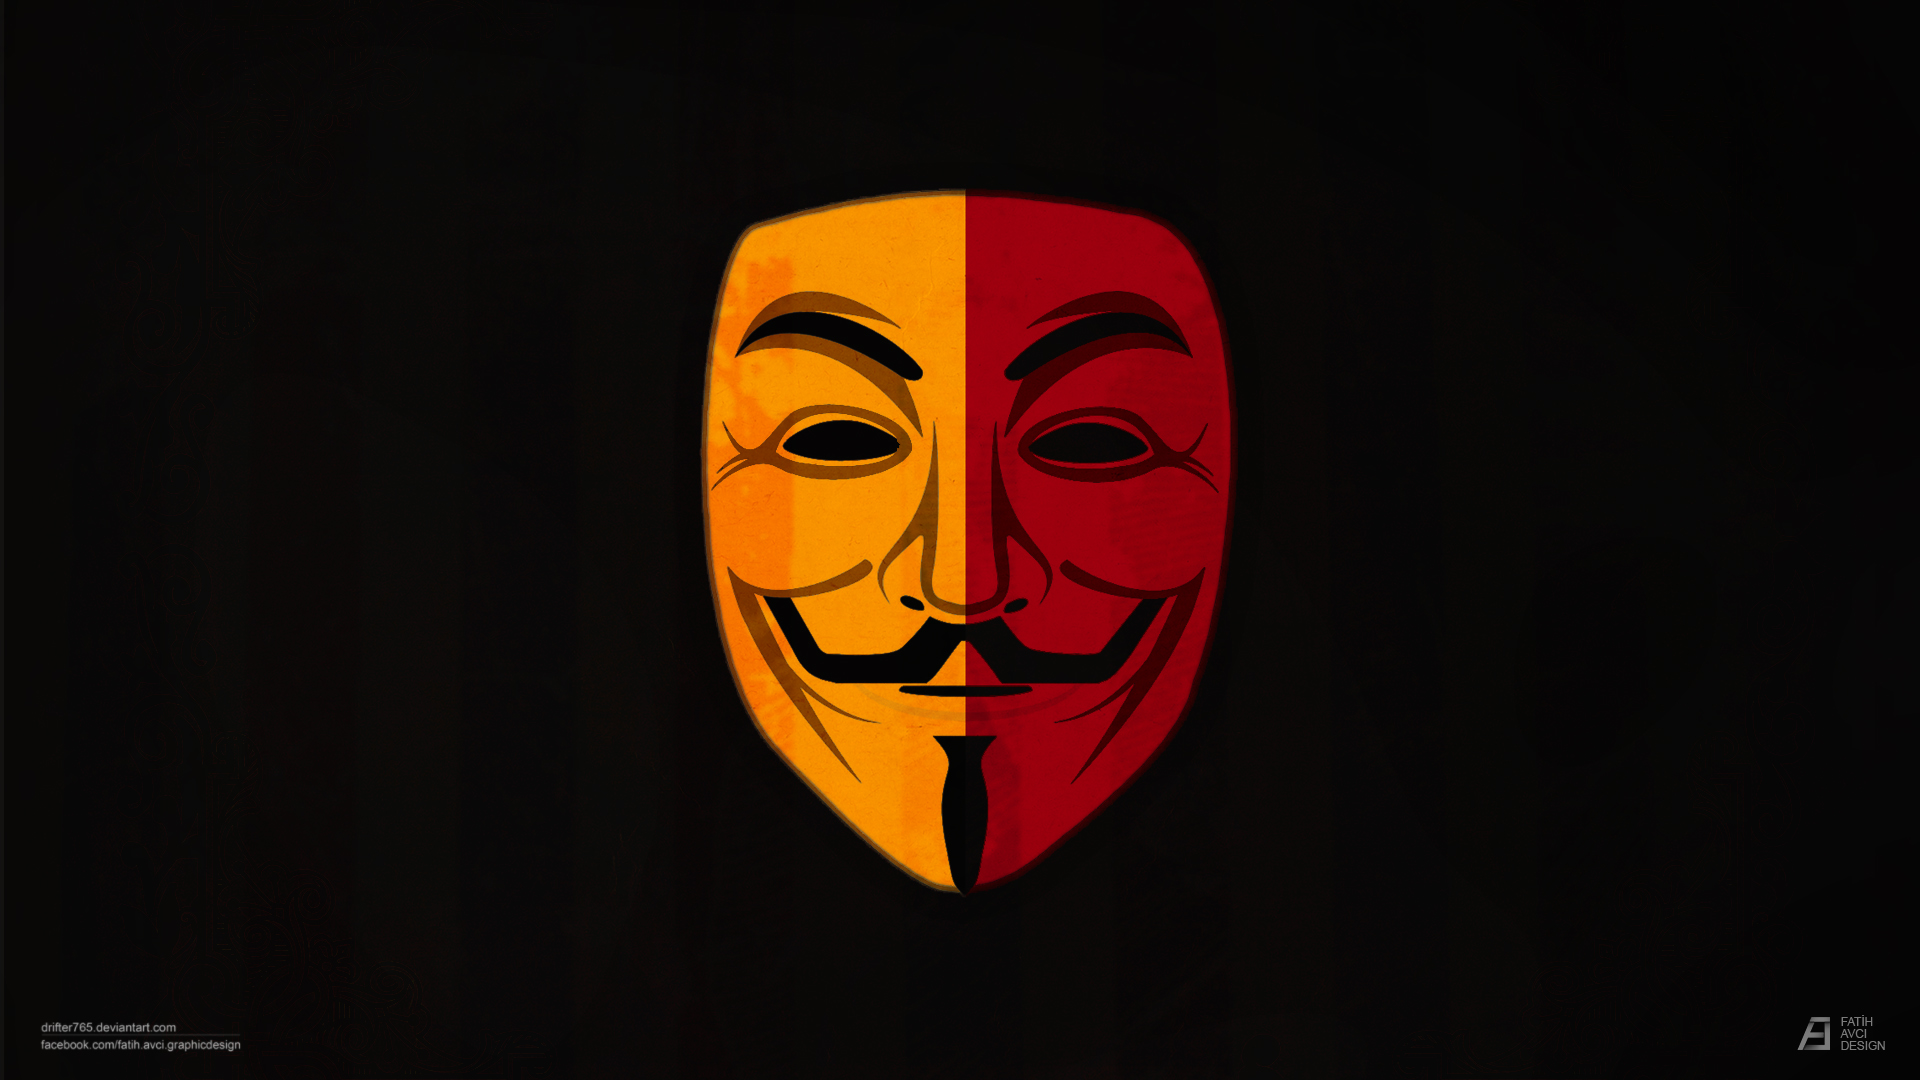 Vendetta HD wallpapers, Desktop wallpaper - most viewed